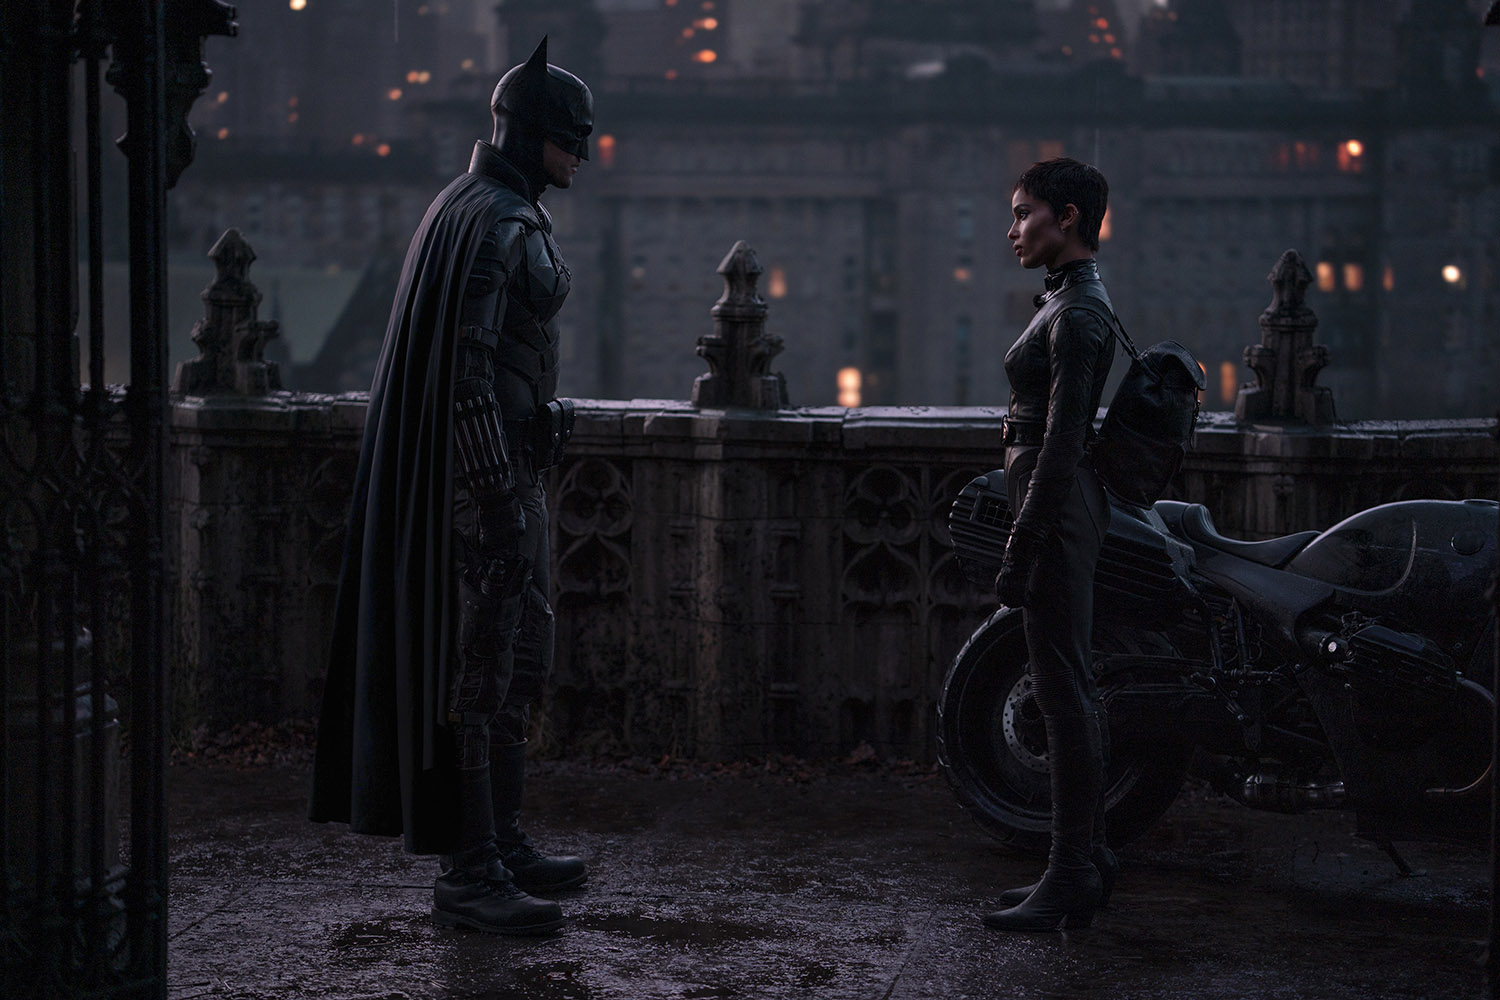 ‘The Batman’ takes a dark ride through Gotham City